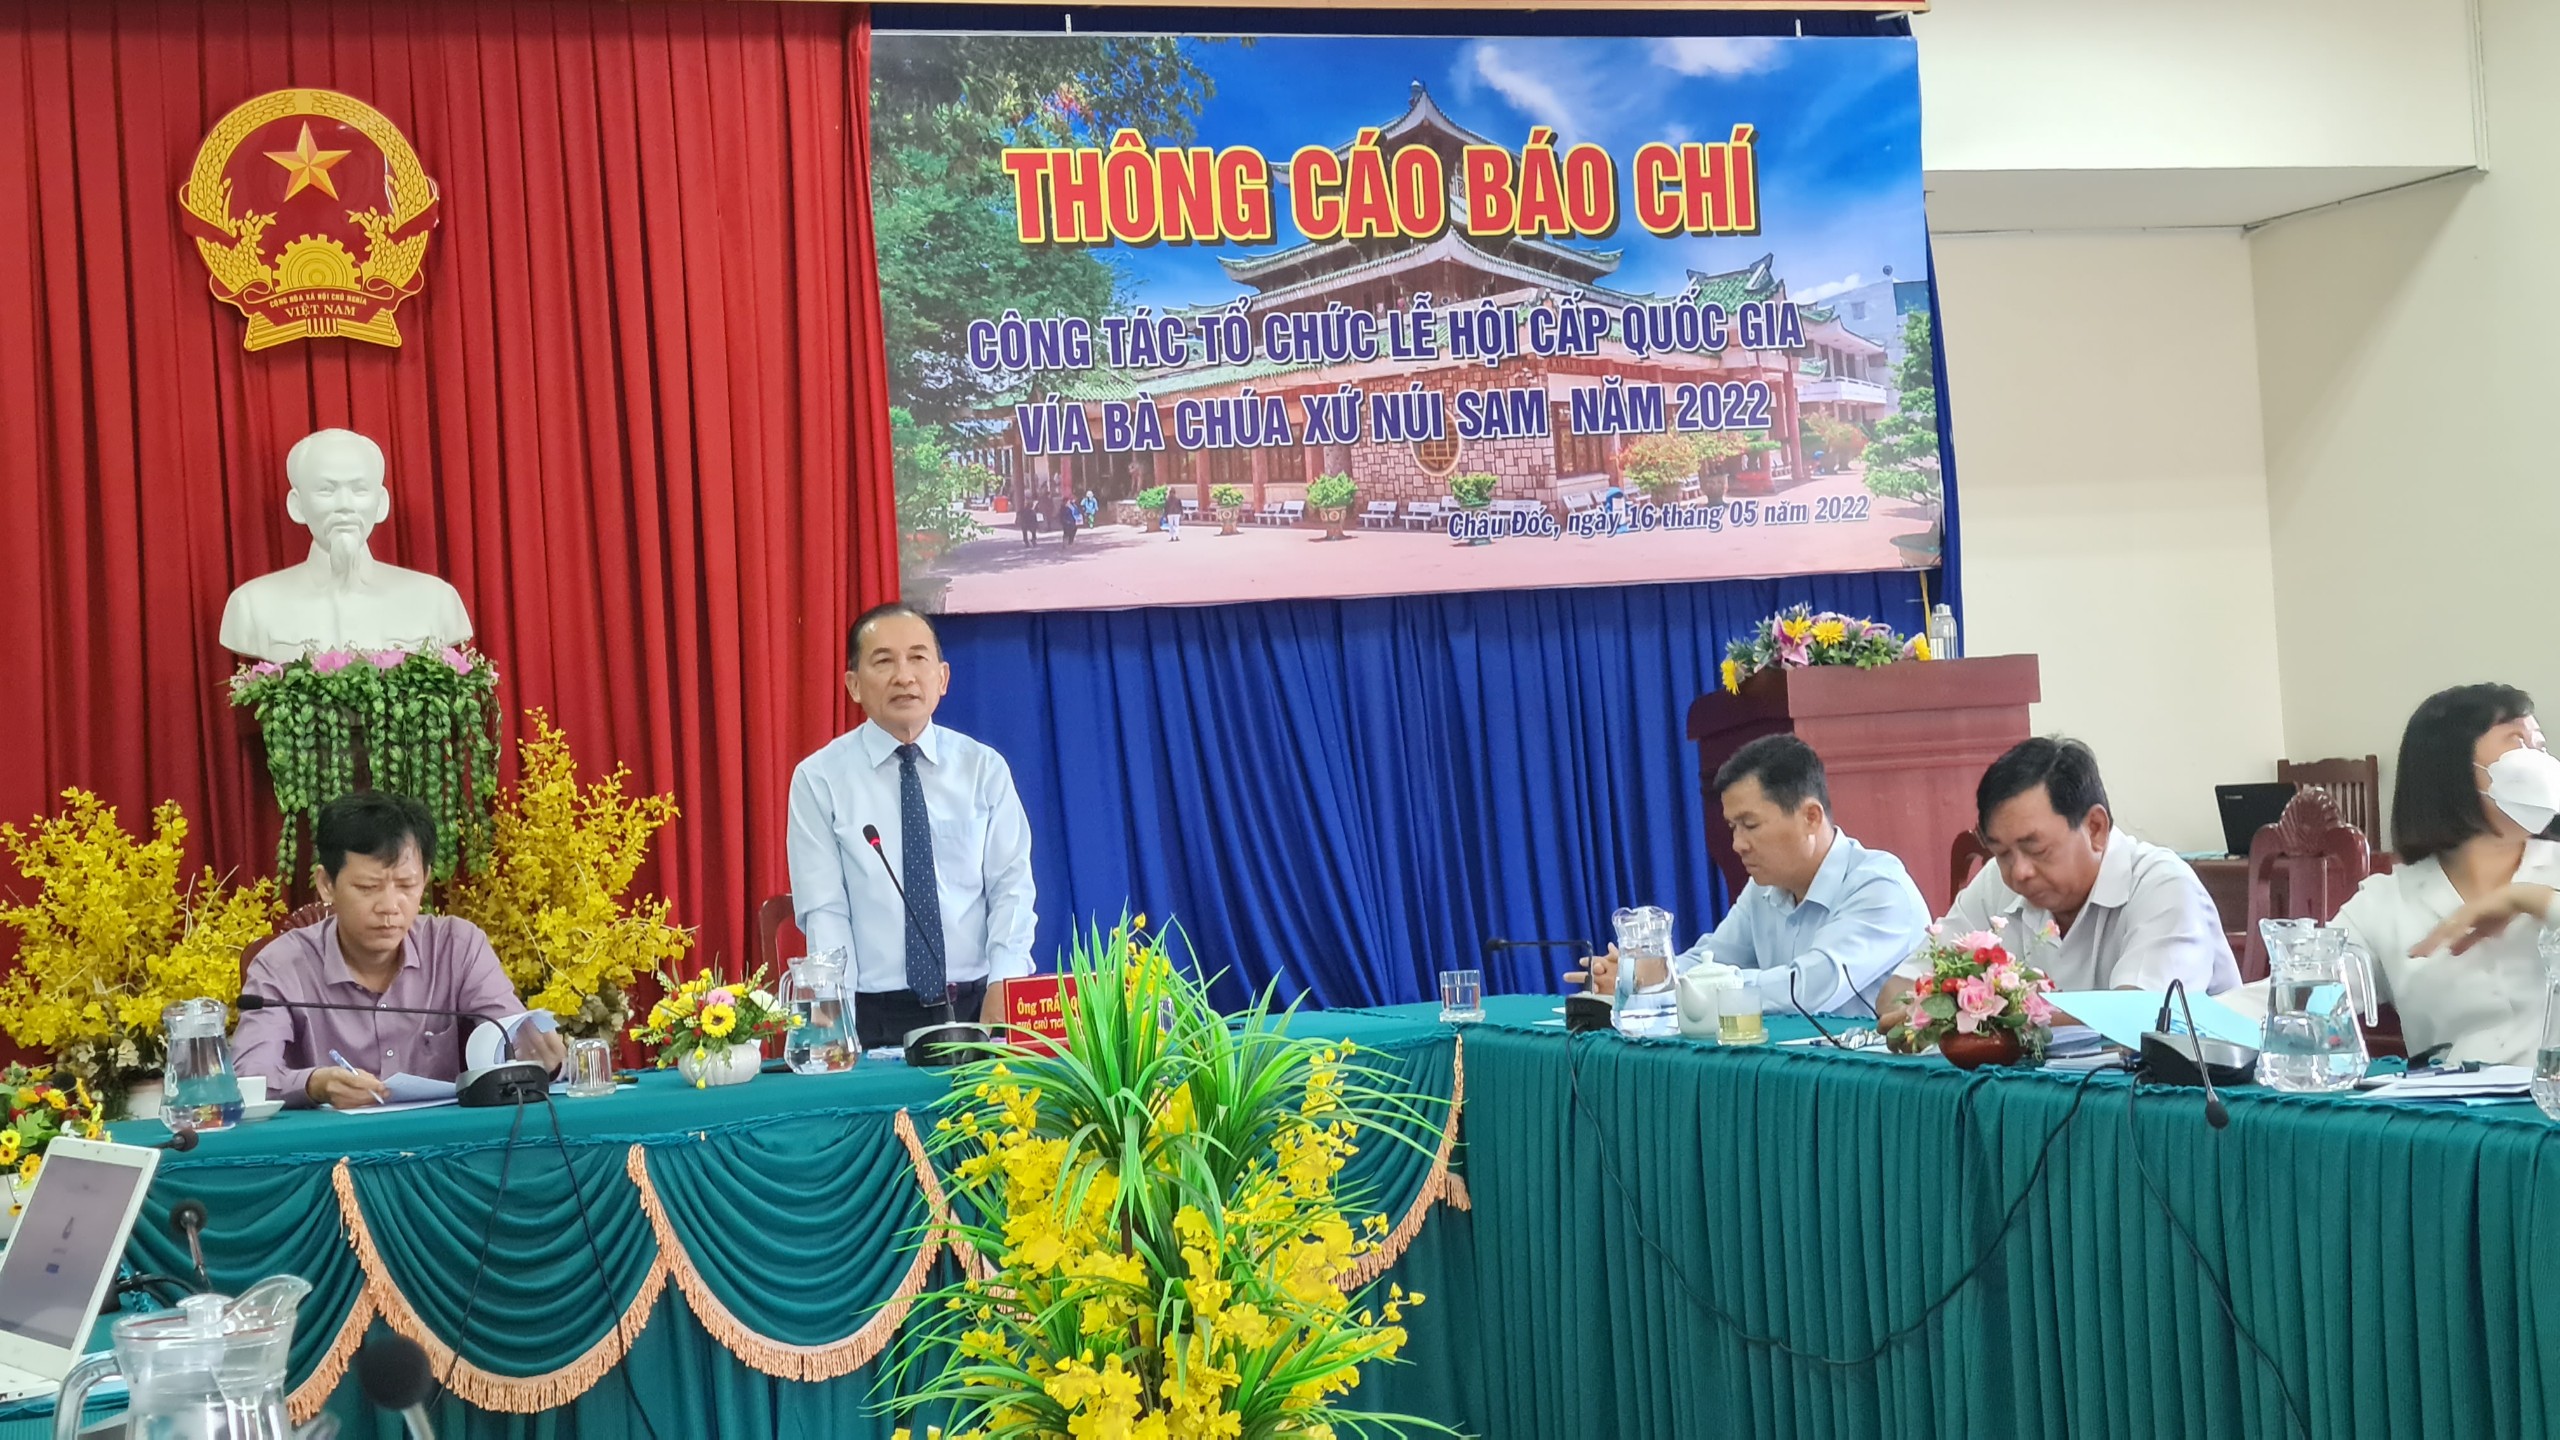 Phó chủ tịch UBND TP Châu Đốc Trần Quốc Tuấn chủ trì, thông tin về các điểm nhấn của Lễ hội Vía Bà Chúa Xứ núi Sam sau 2 năm không tổ chức vì dịch Covid-19.